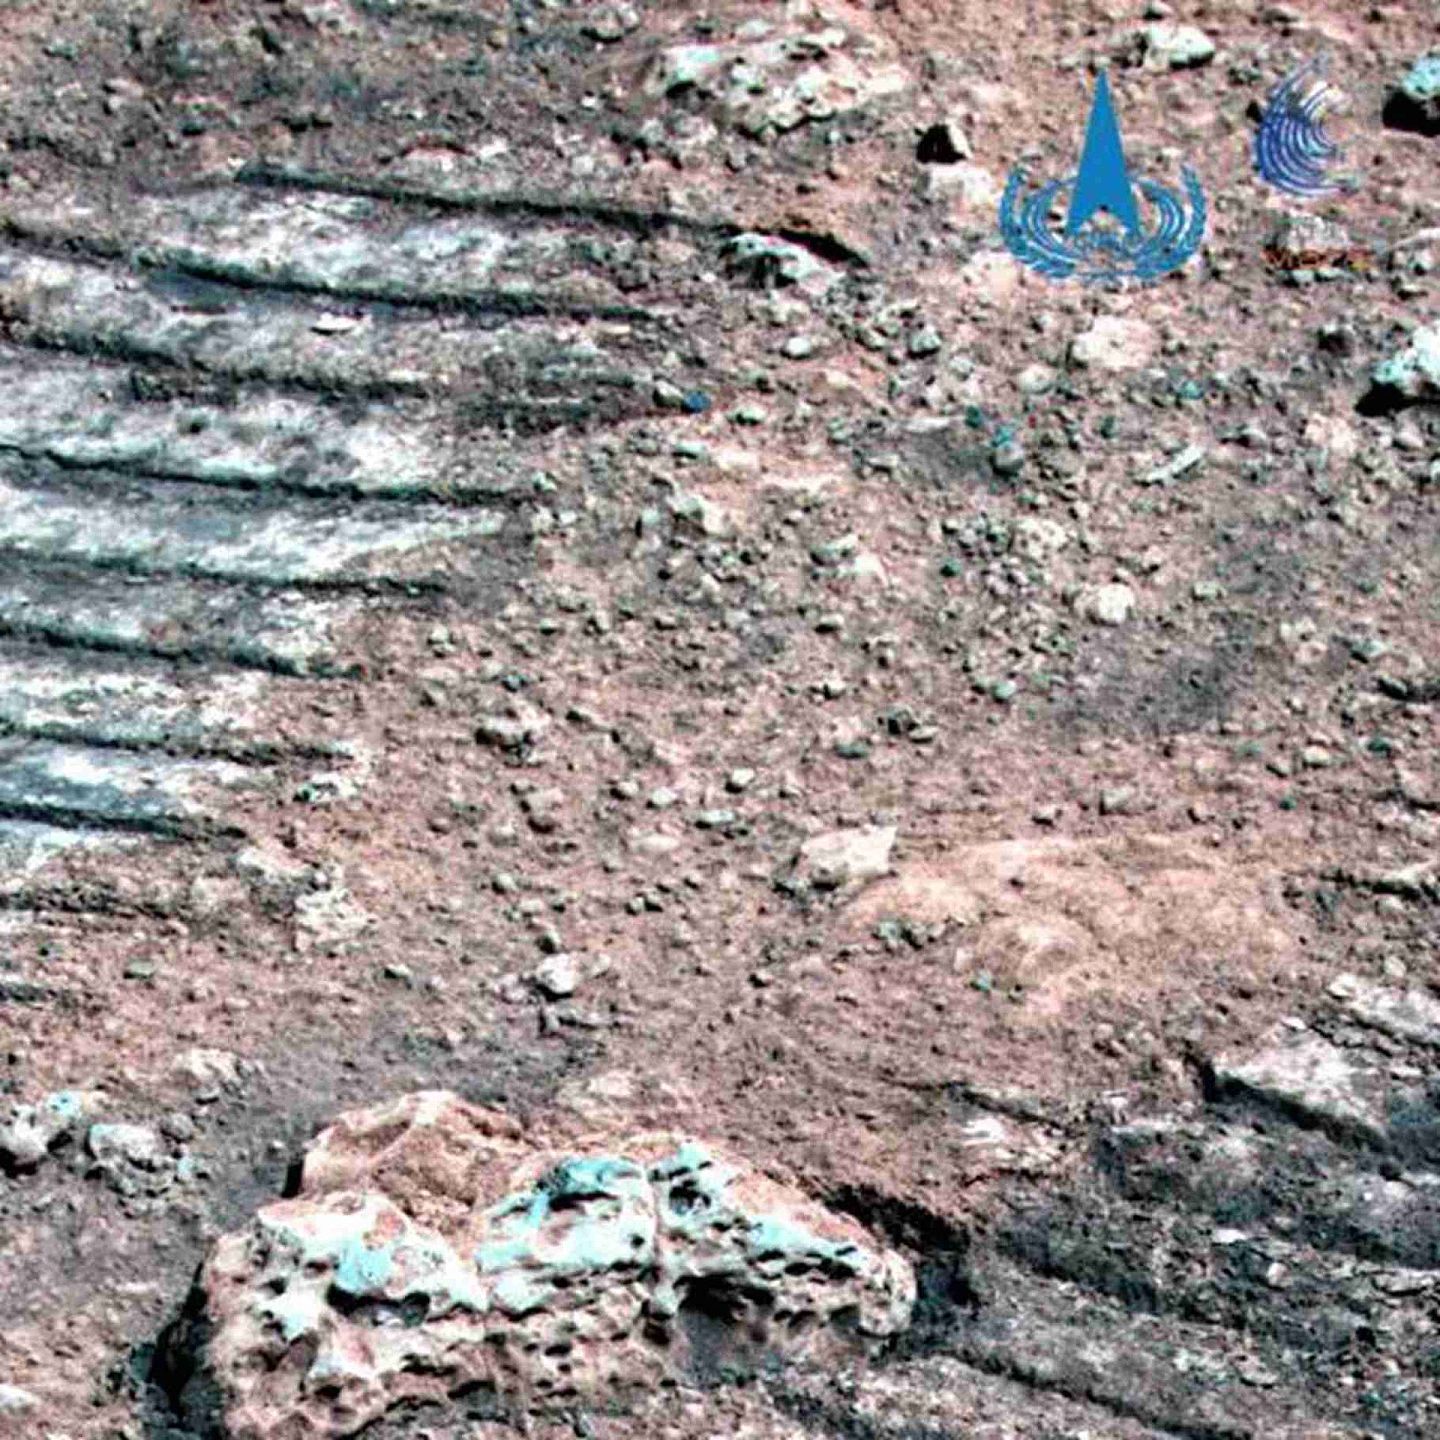 这是由“祝融号”火星车拍摄的火星岩石，图中可见火星岩石纹理和火星车车辙。（微信@中国探月工程）